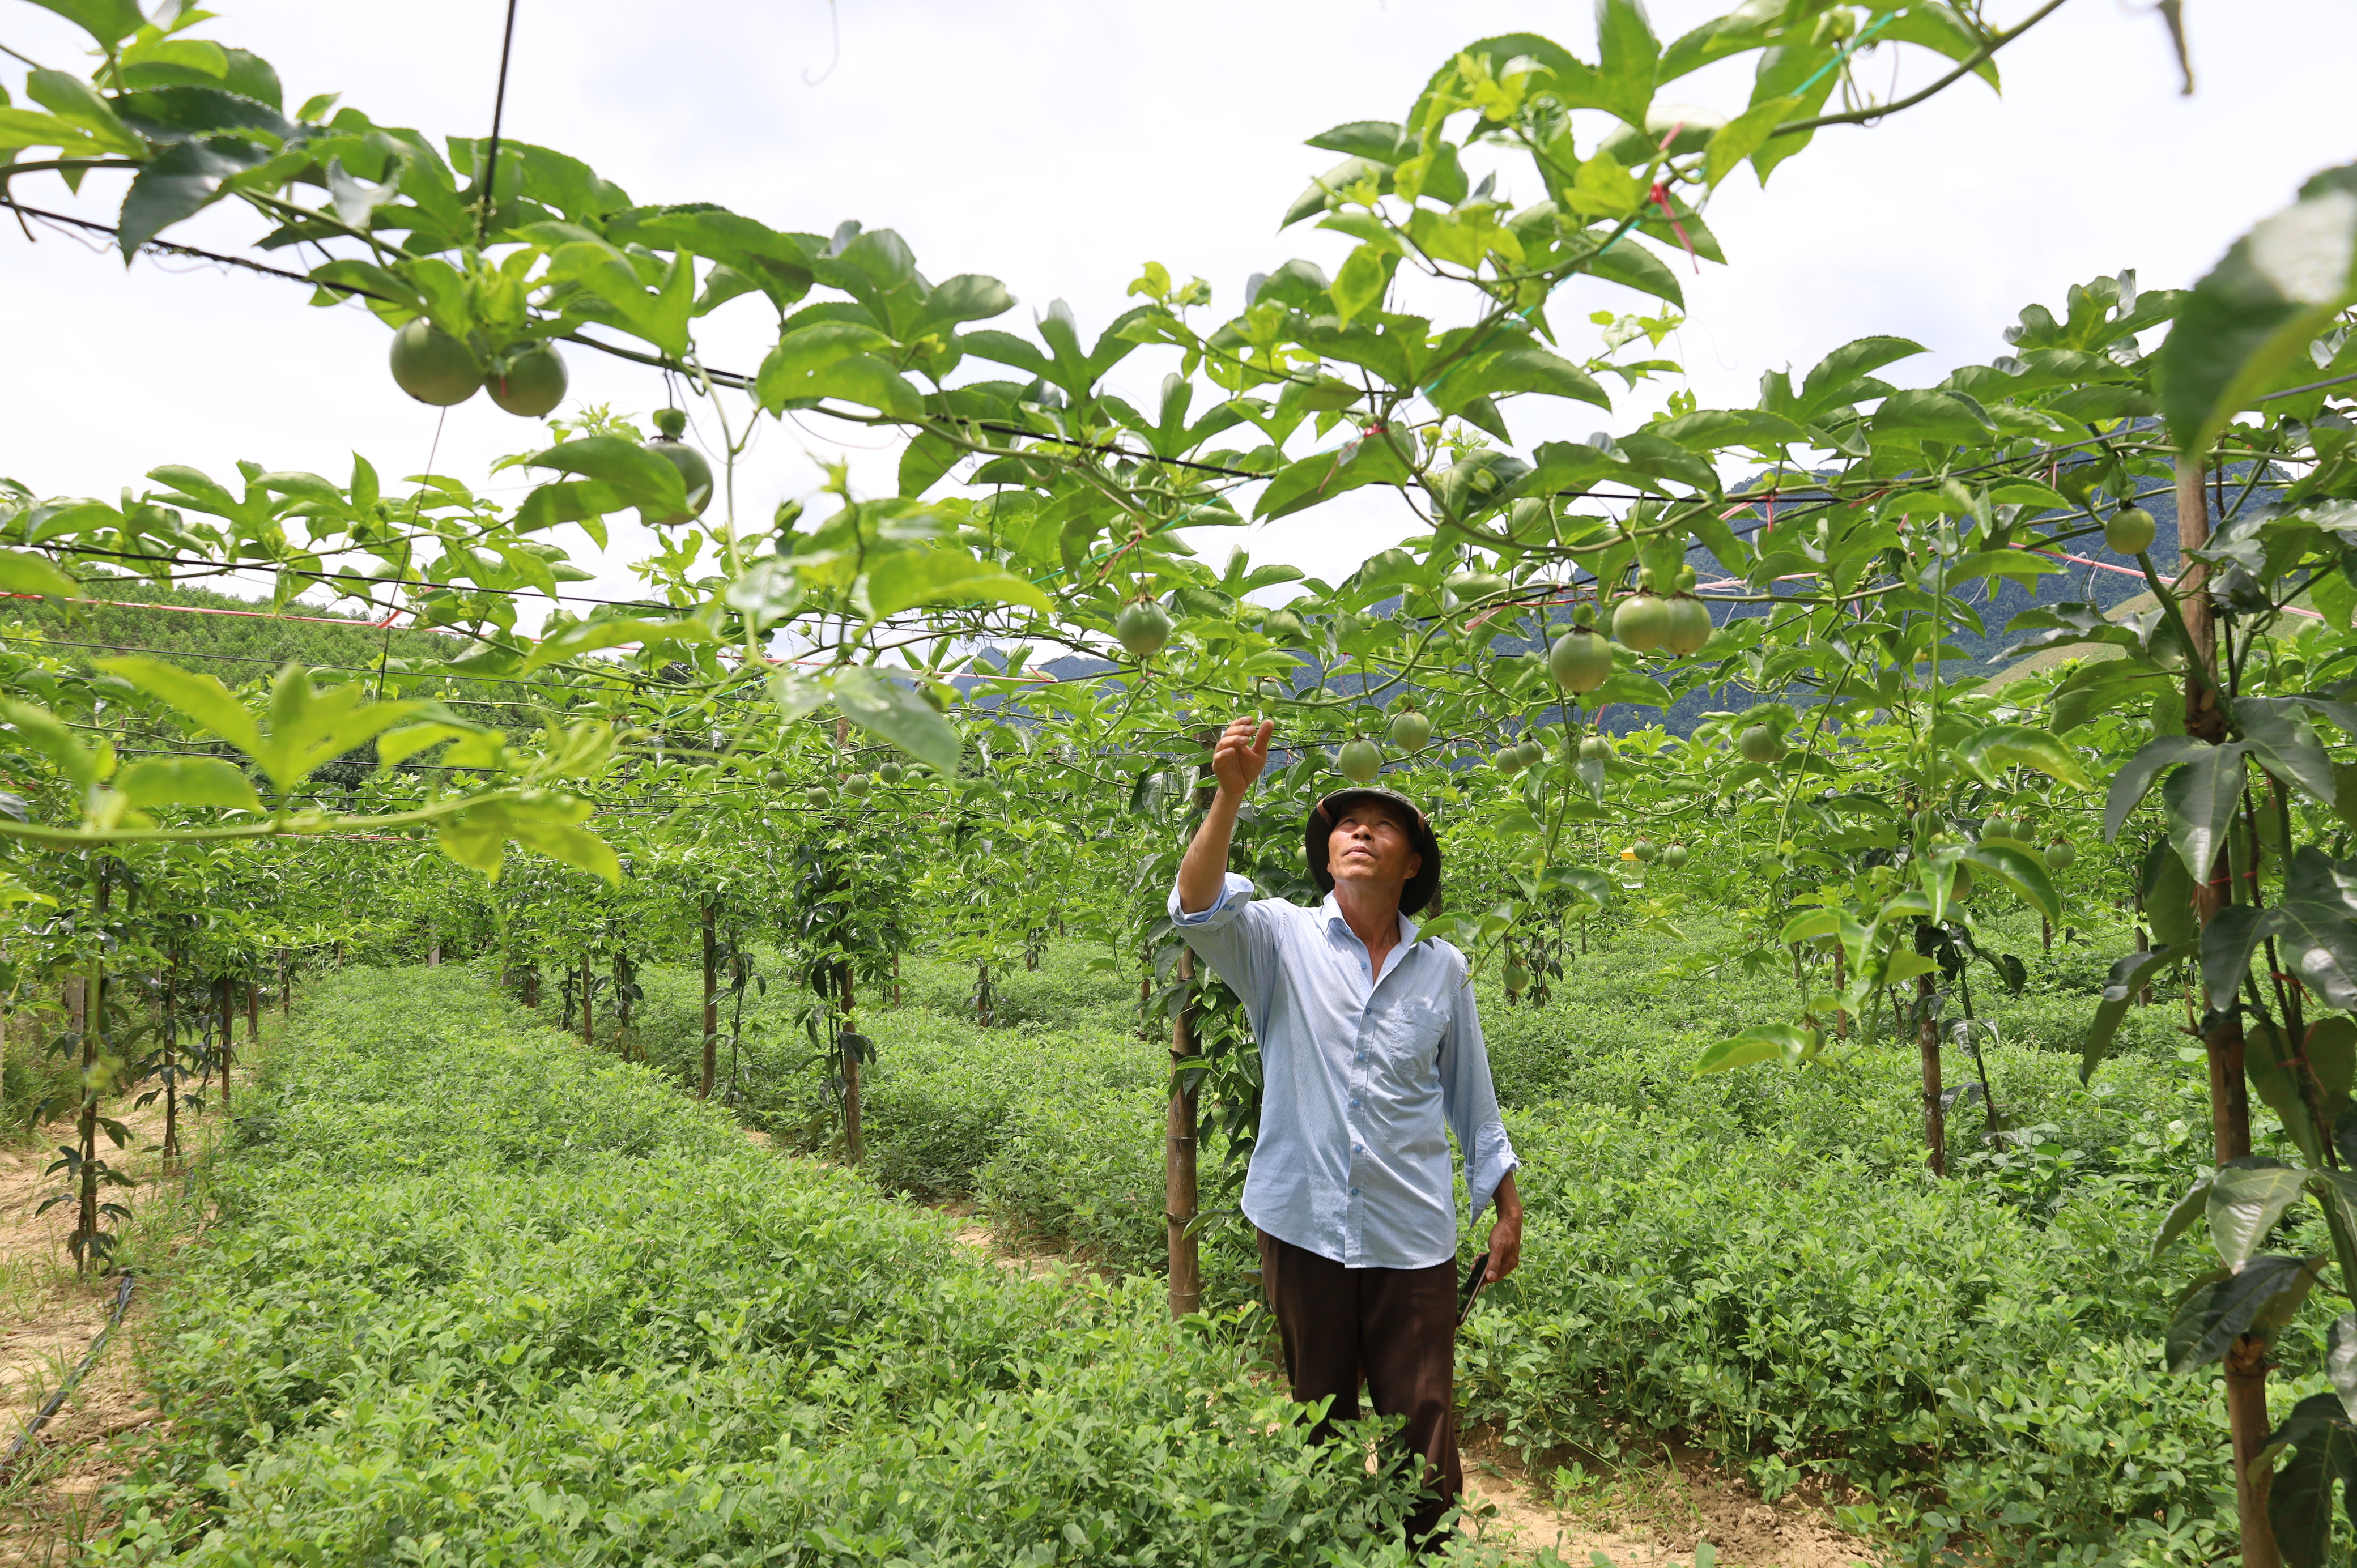 Mô hình trồng cây chanh leo xen lạc góp phần giúp người dân xã Hóa Sơn mở hướng giảm nghèo và vươn lên làm giàu hiệu quả.